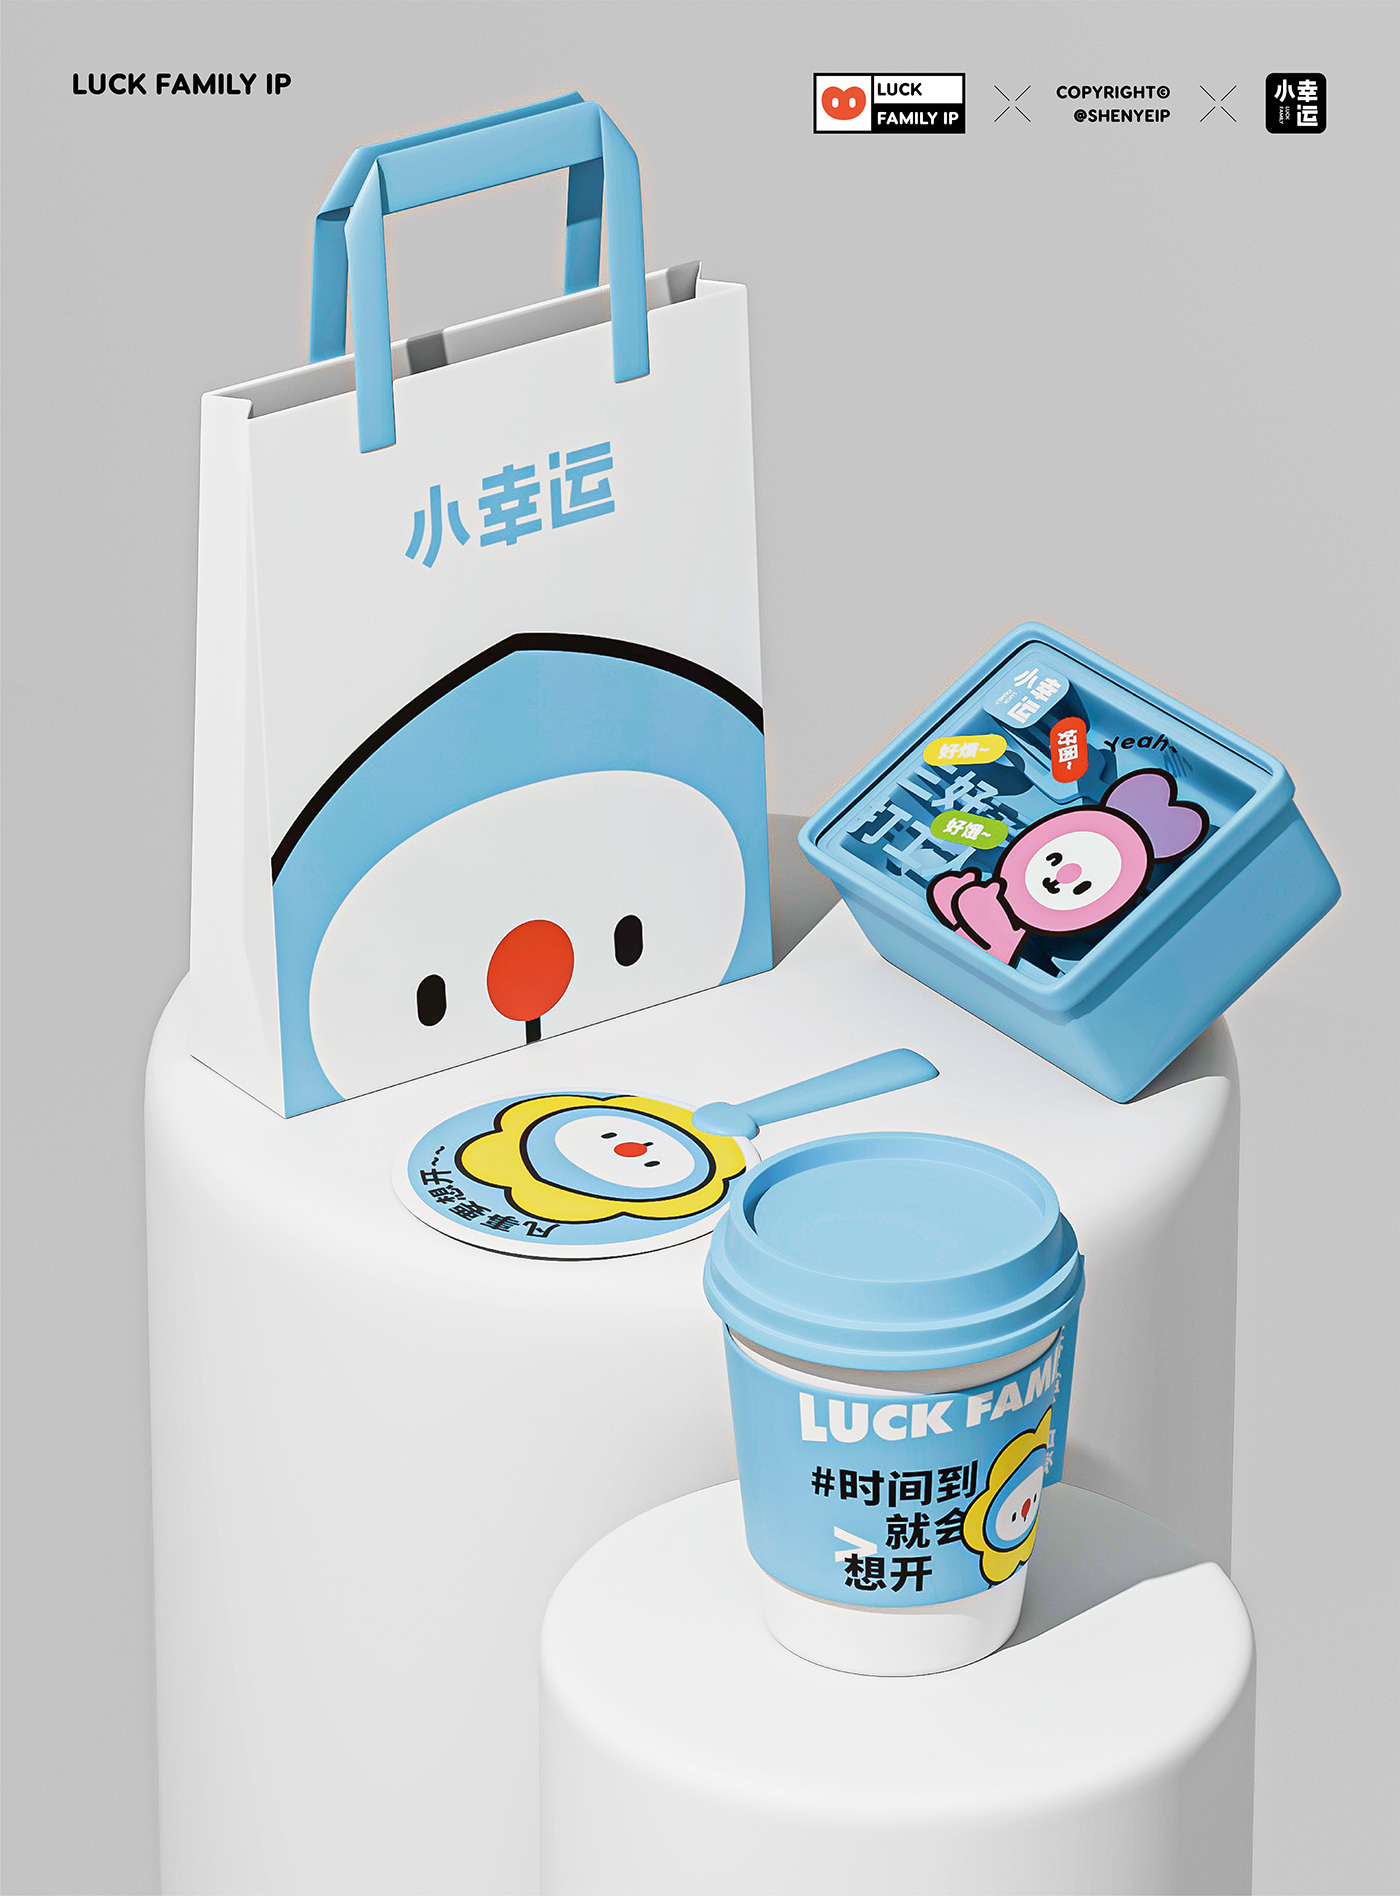 十二生肖 chinese zodiac animals Character design  digital illustration cartoon